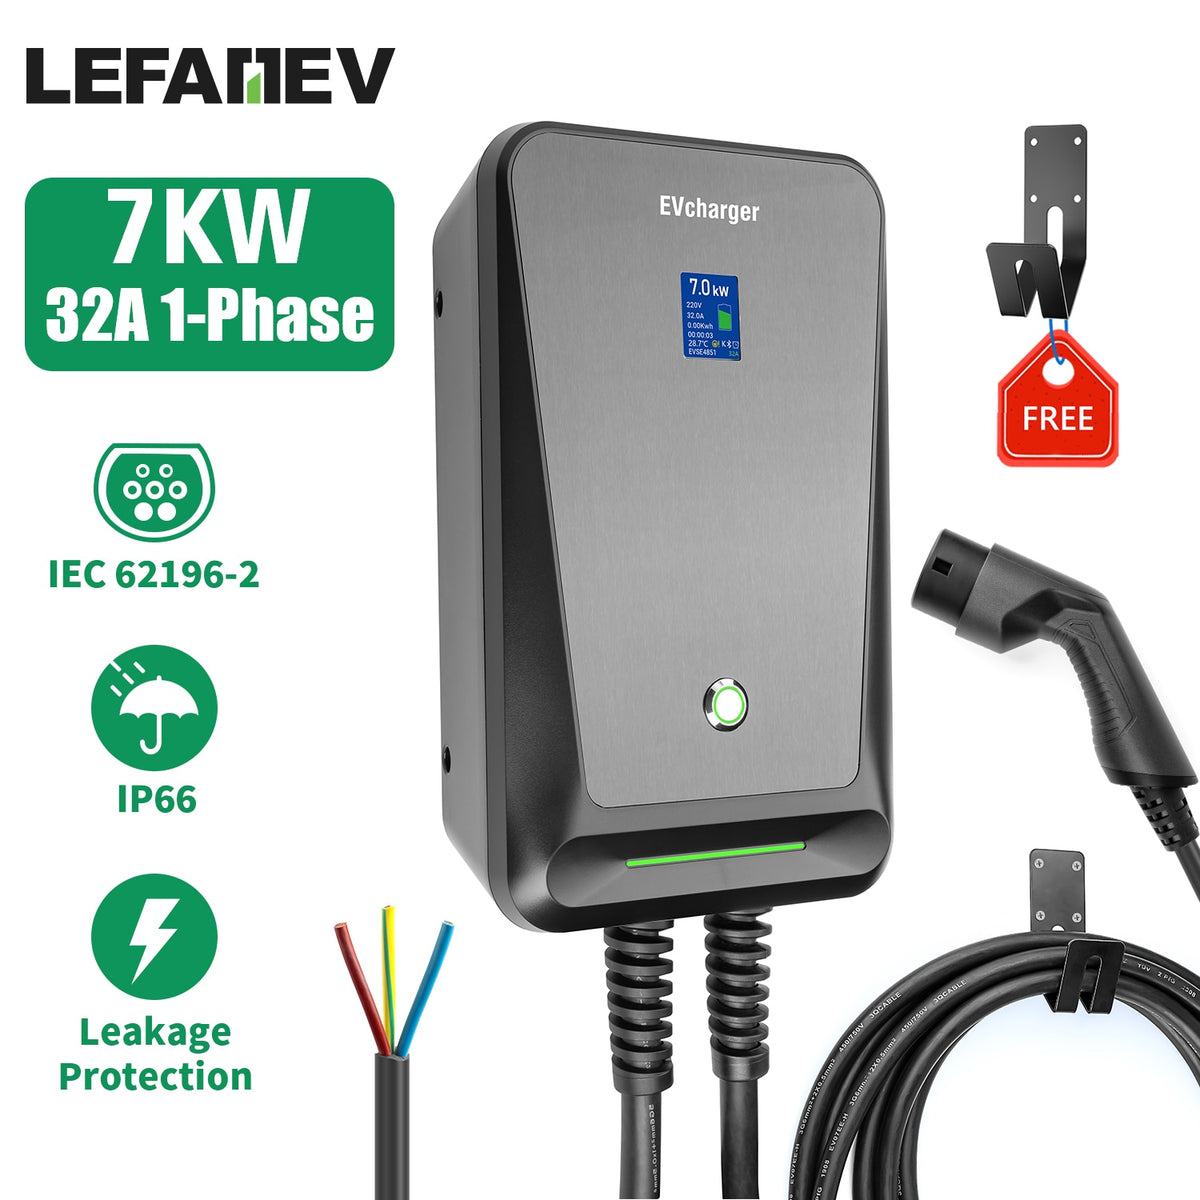 Station de charge portable EV, Type 2, chargeur de voiture électrique IEC  62196-2 